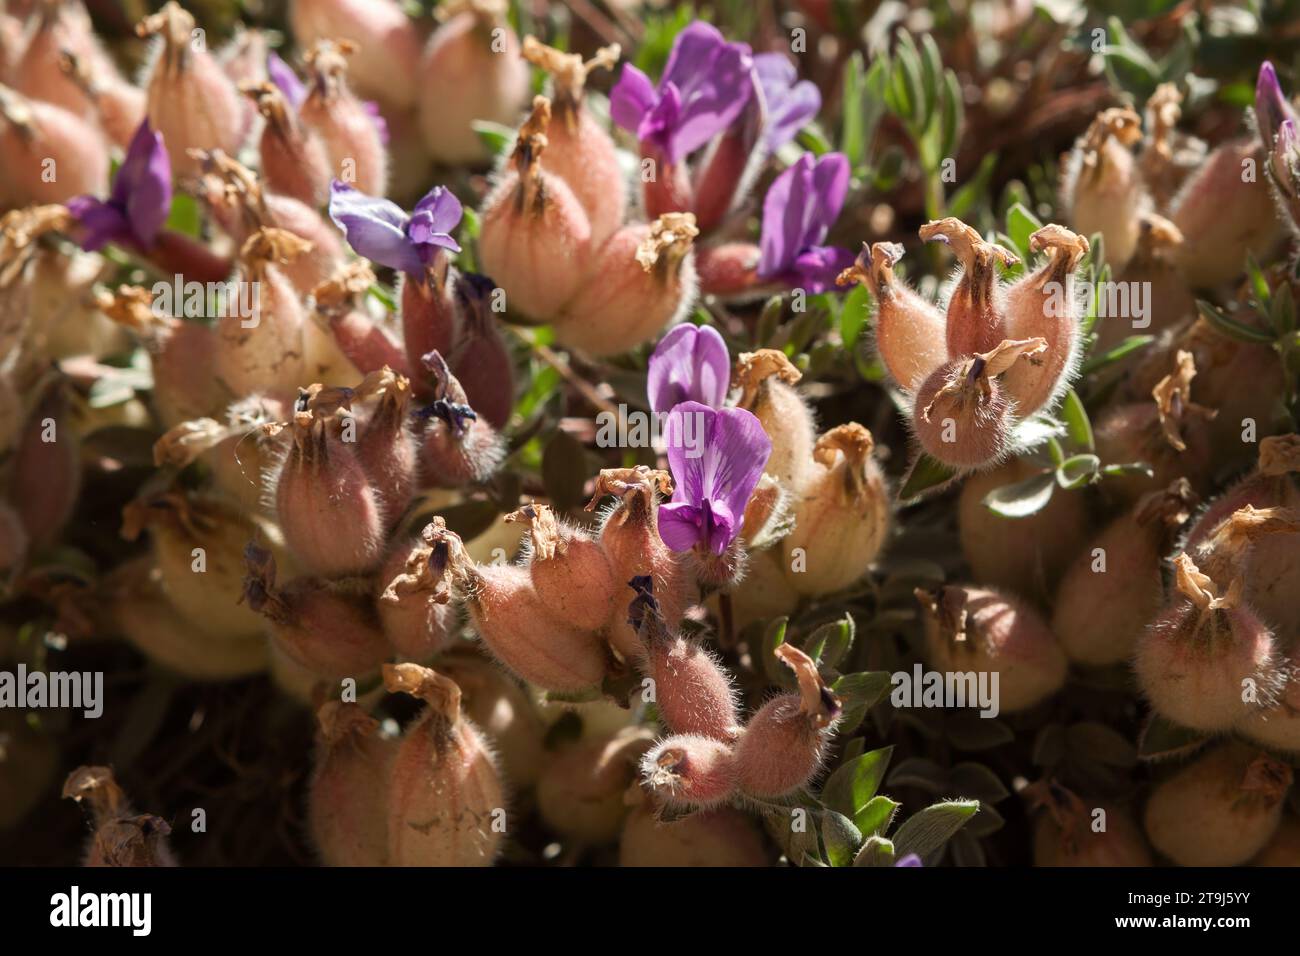 Gros plan de la vache de lait violette précoce (Astragalus shortianus) qui est presque terminée floraison et gousses de graines. Banque D'Images